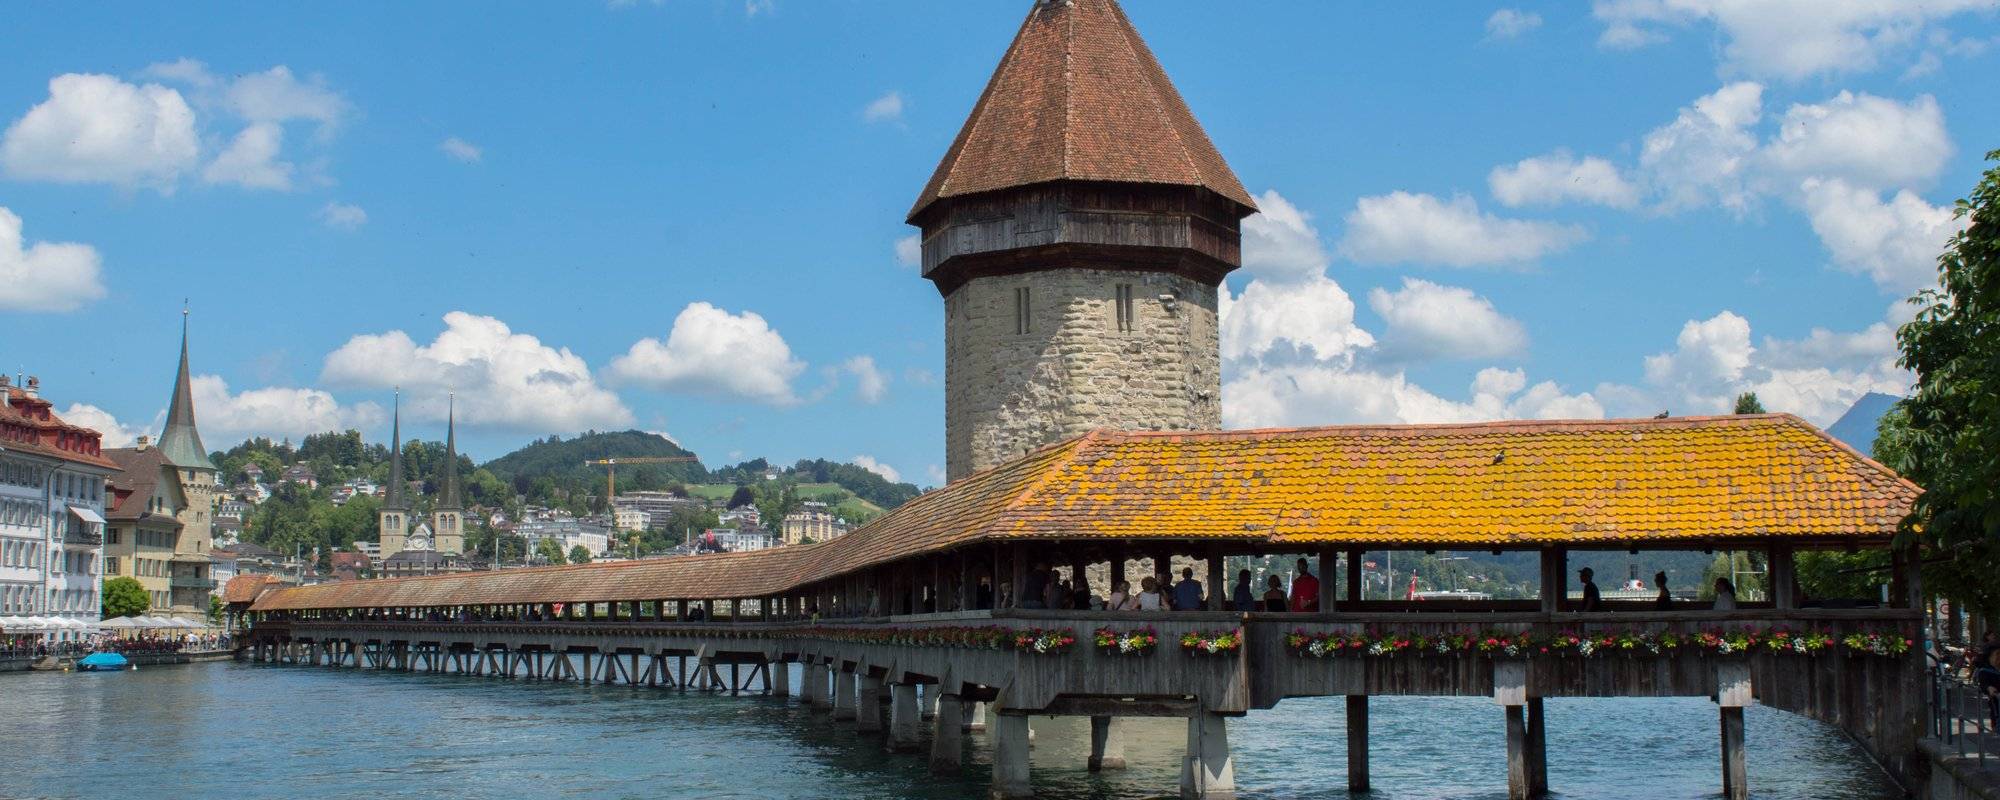 Switzerland travel series - part 6 - Lucerne